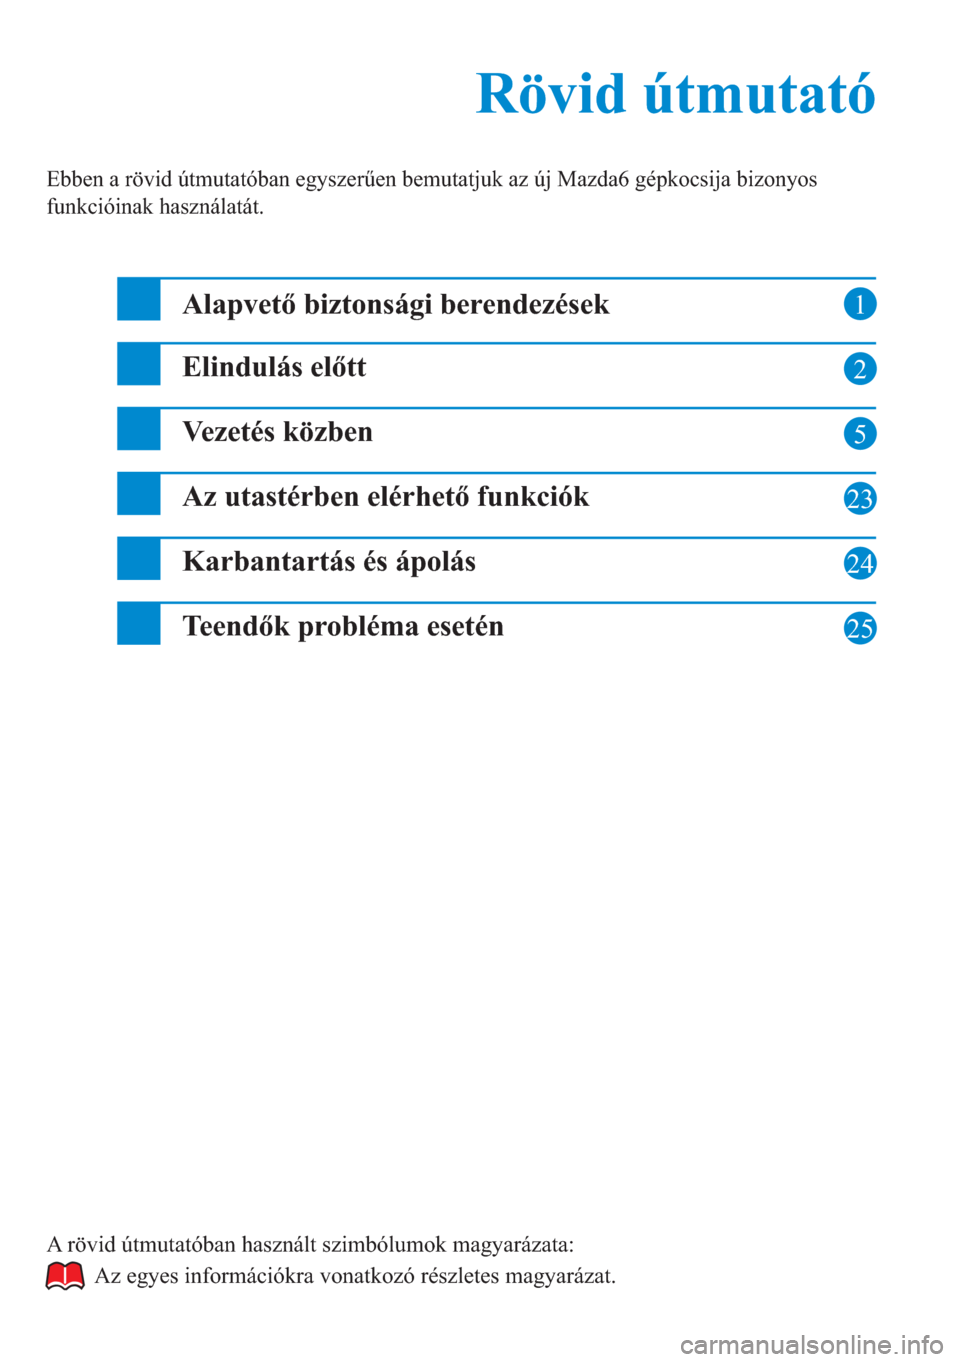 MAZDA MODEL 6 2015  Kezelési útmutató (in Hungarian) 1
2
5
23
24
Rövid útmutató Rövid útmutató
Ebben a rövid útmutatóban egyszerűen bemutatjuk az új Mazda6 gépkocsija bizonyos 
funkcióinak használatát.
Alapvető biztonsági berendezések
